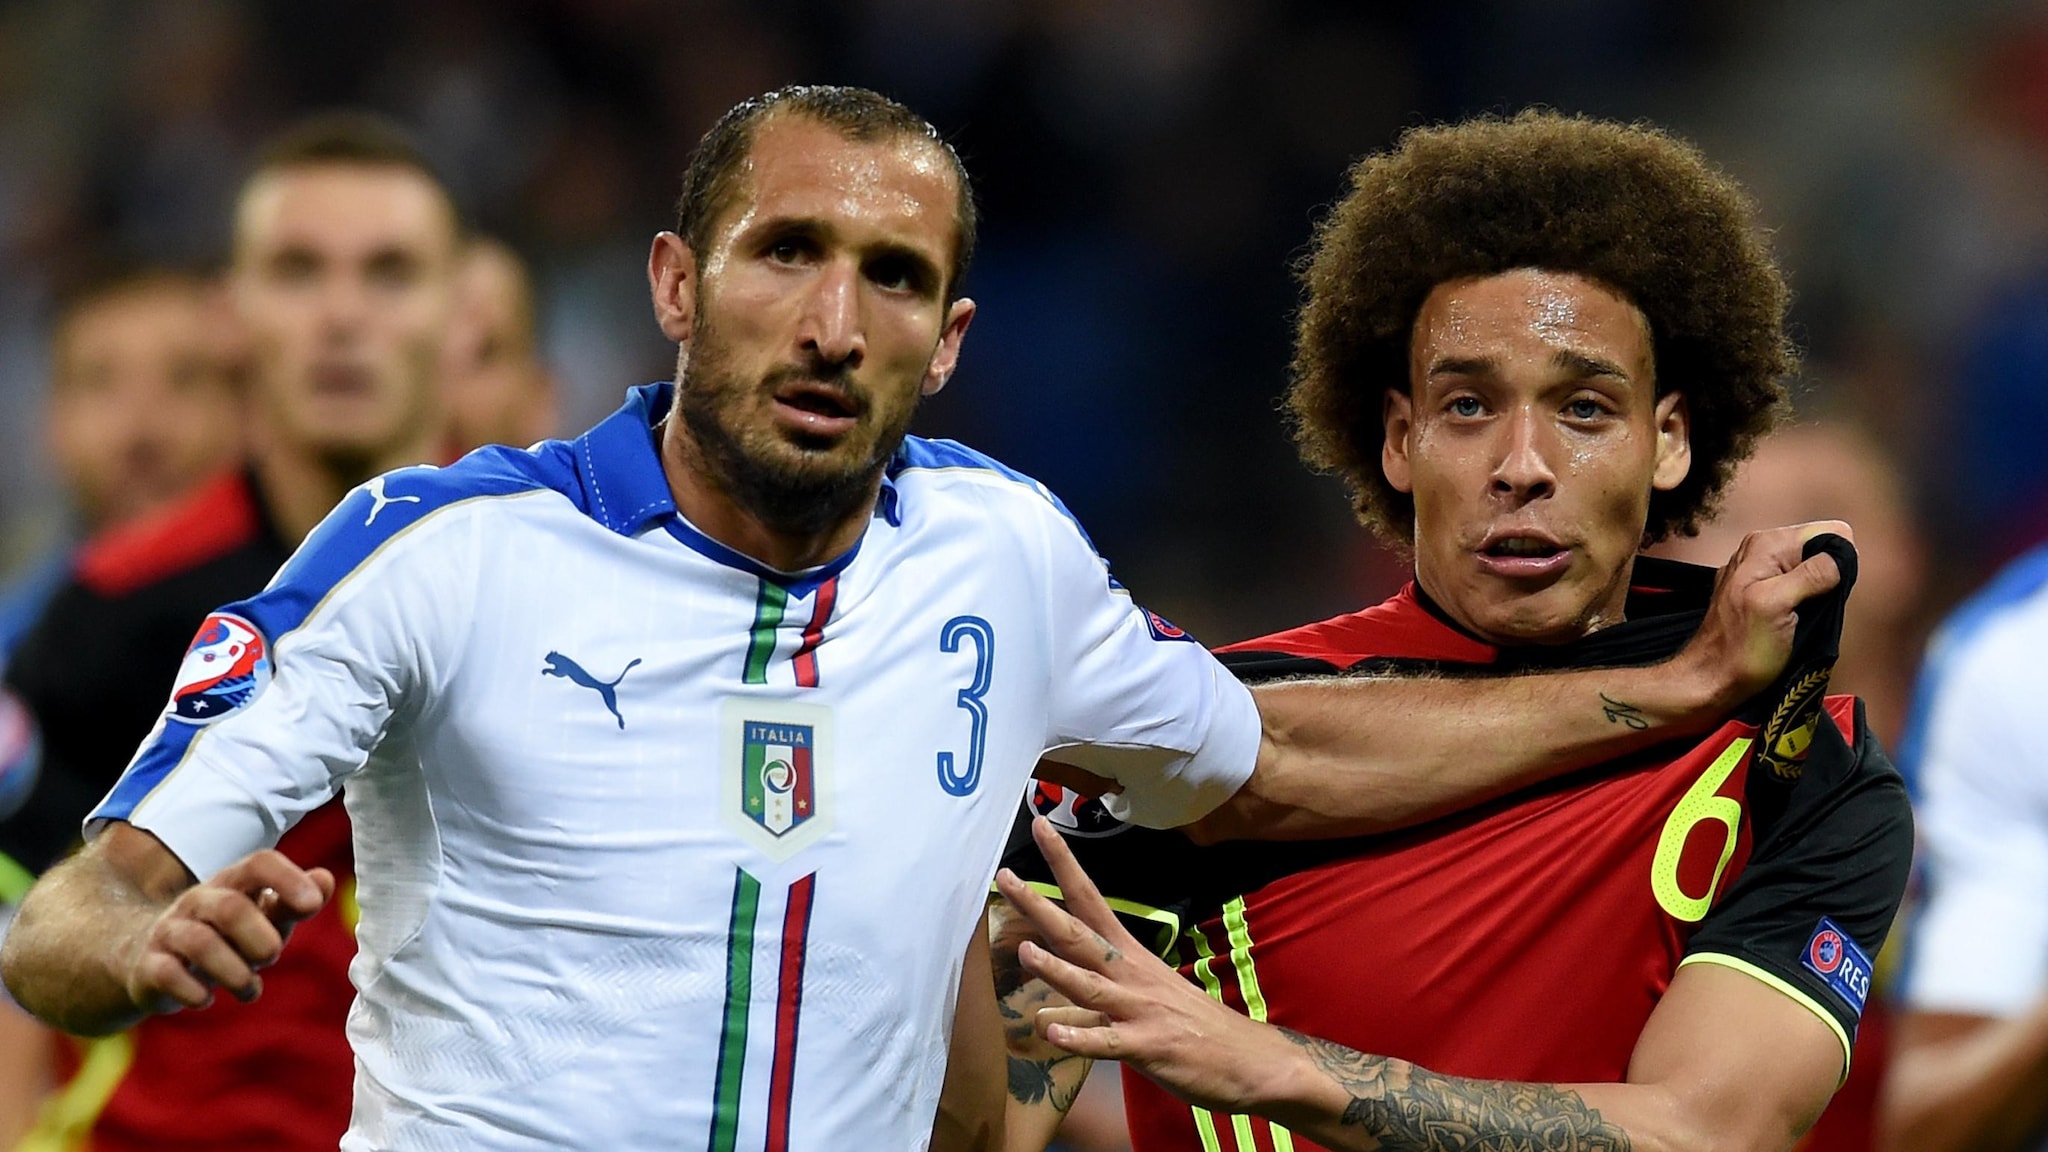 Италия и Бельгия готовы к матчу и уже поделились стартовыми составами